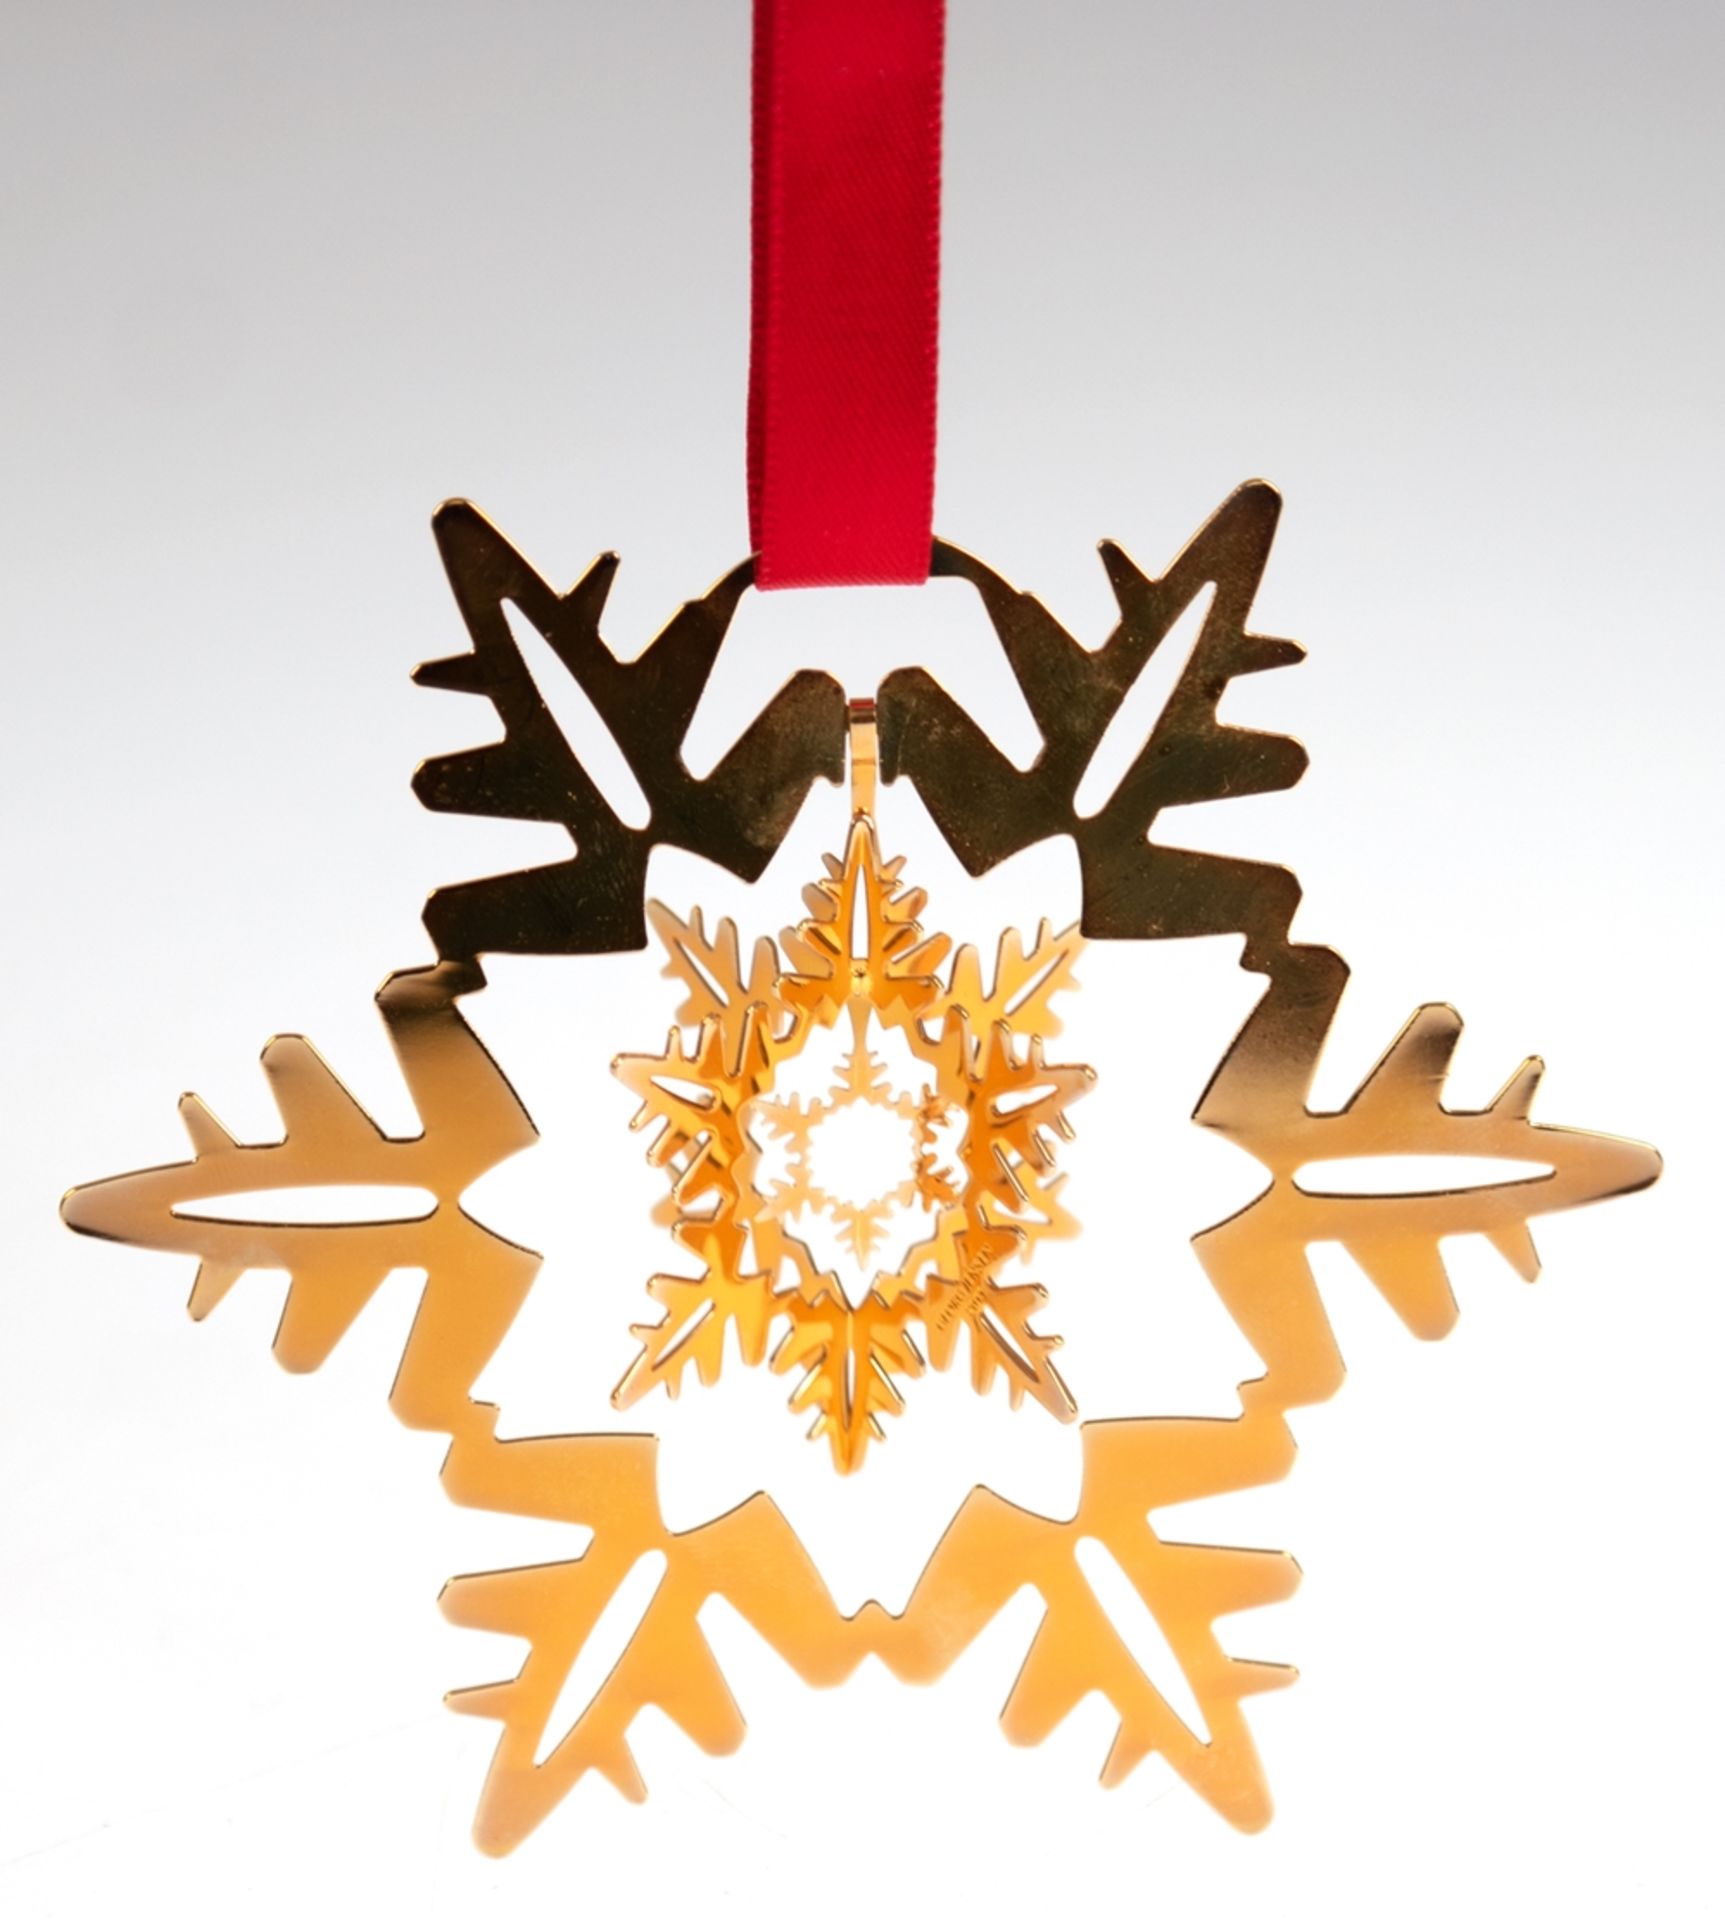 Weihnachtsschmuck "Schneekristall", Dänemark, Design Georg Jensen 2011, Kopenhagen, 24 ct vergoldet